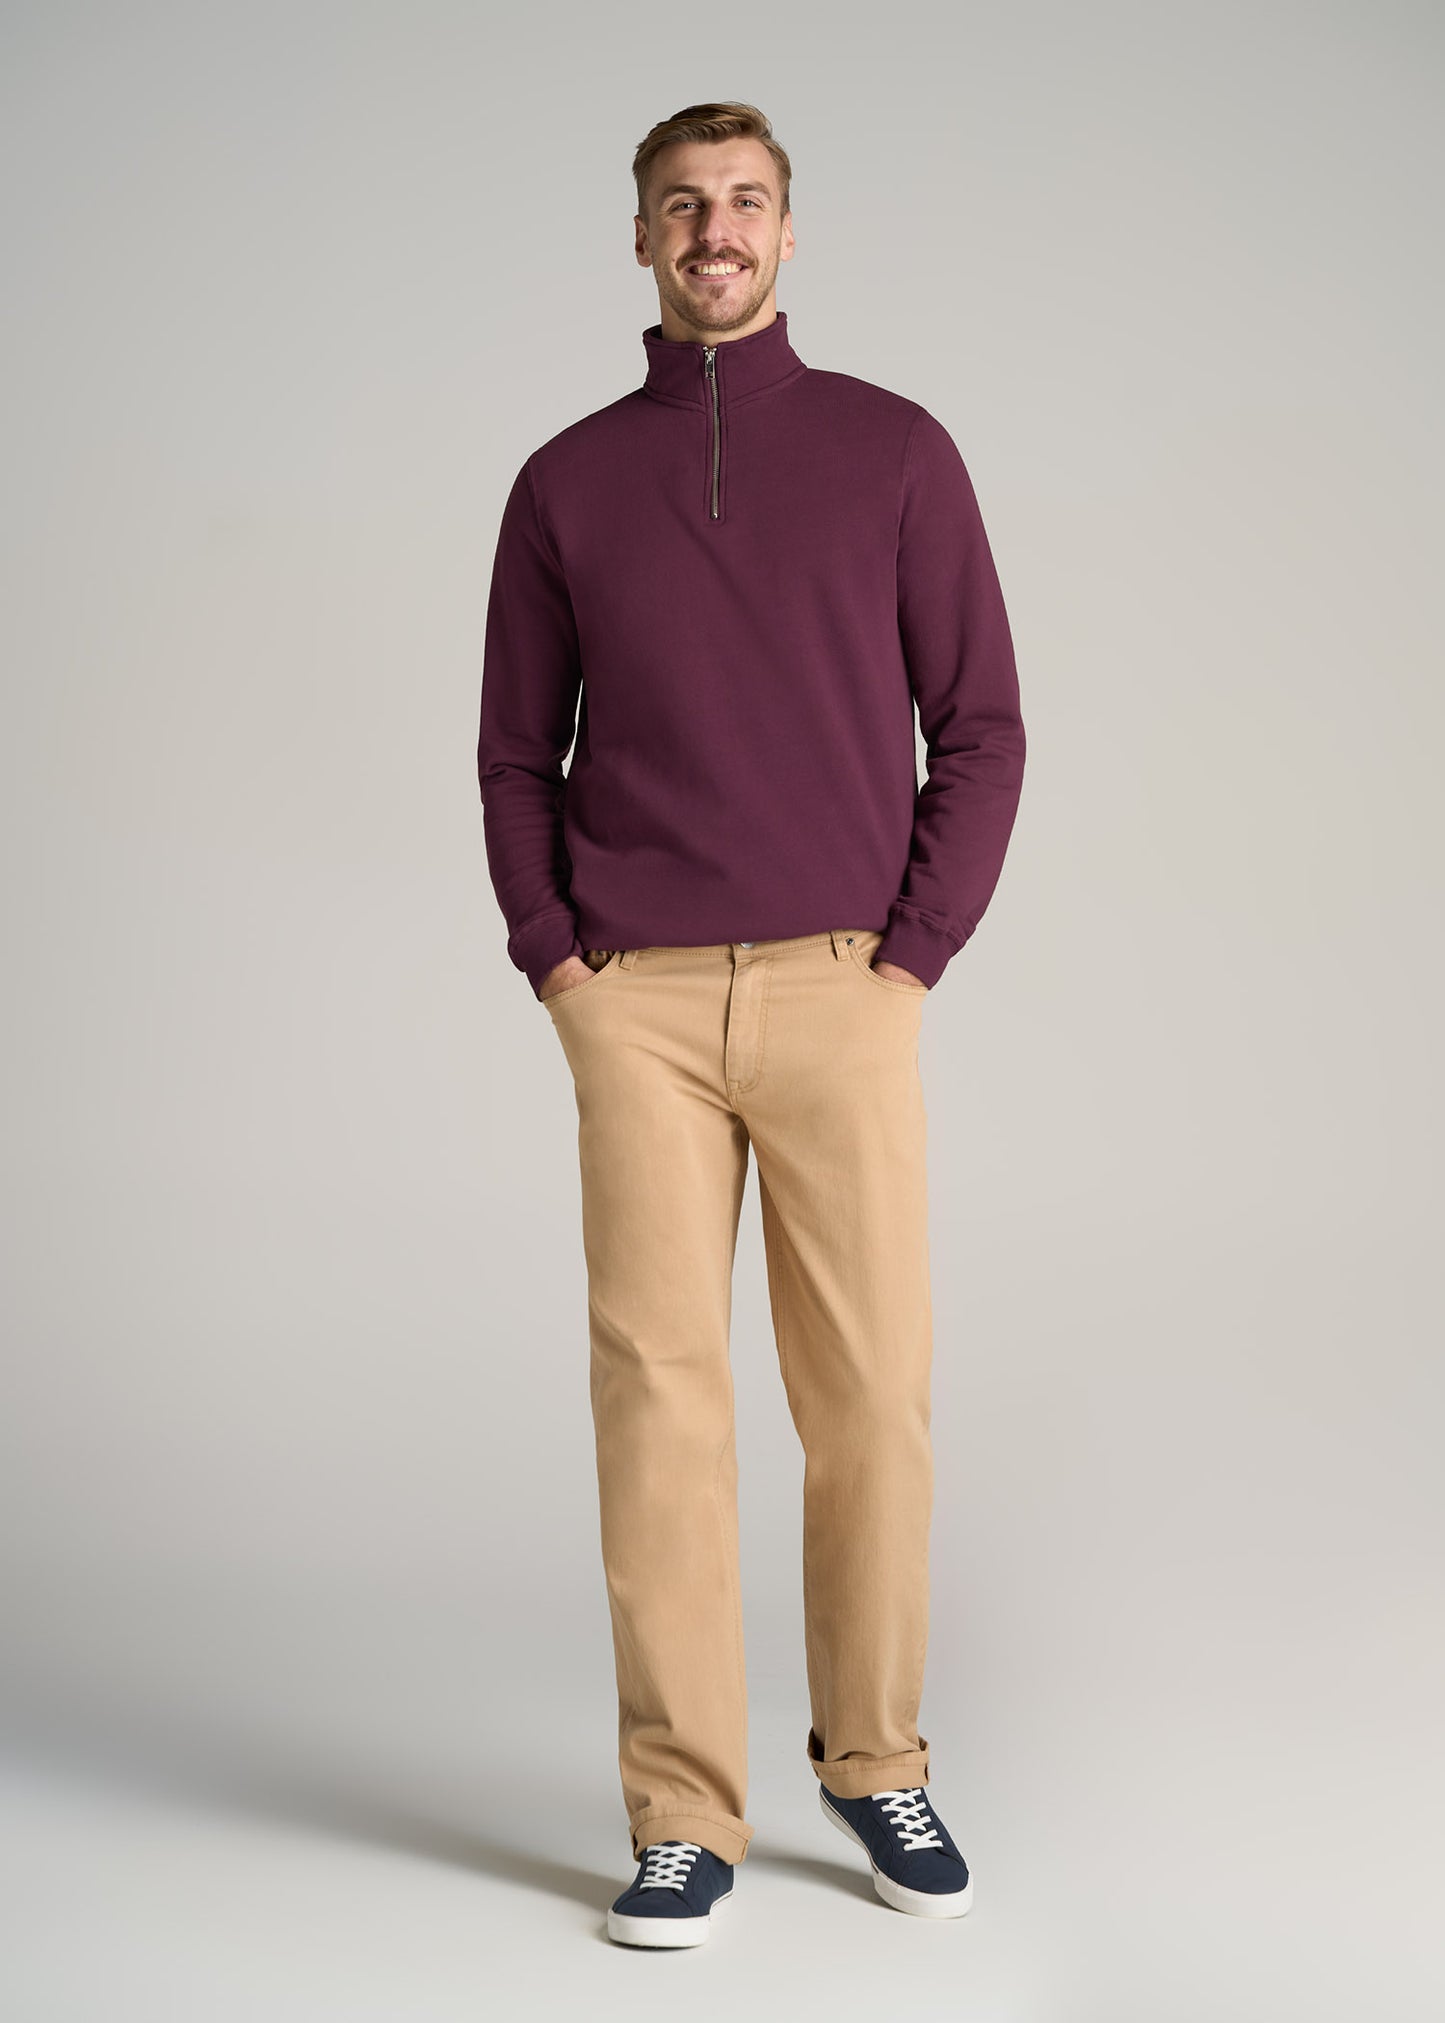     American-Tall-Men-Wearever-Fleece-Quarter-Zip-Sweatshirt-Maroon-full